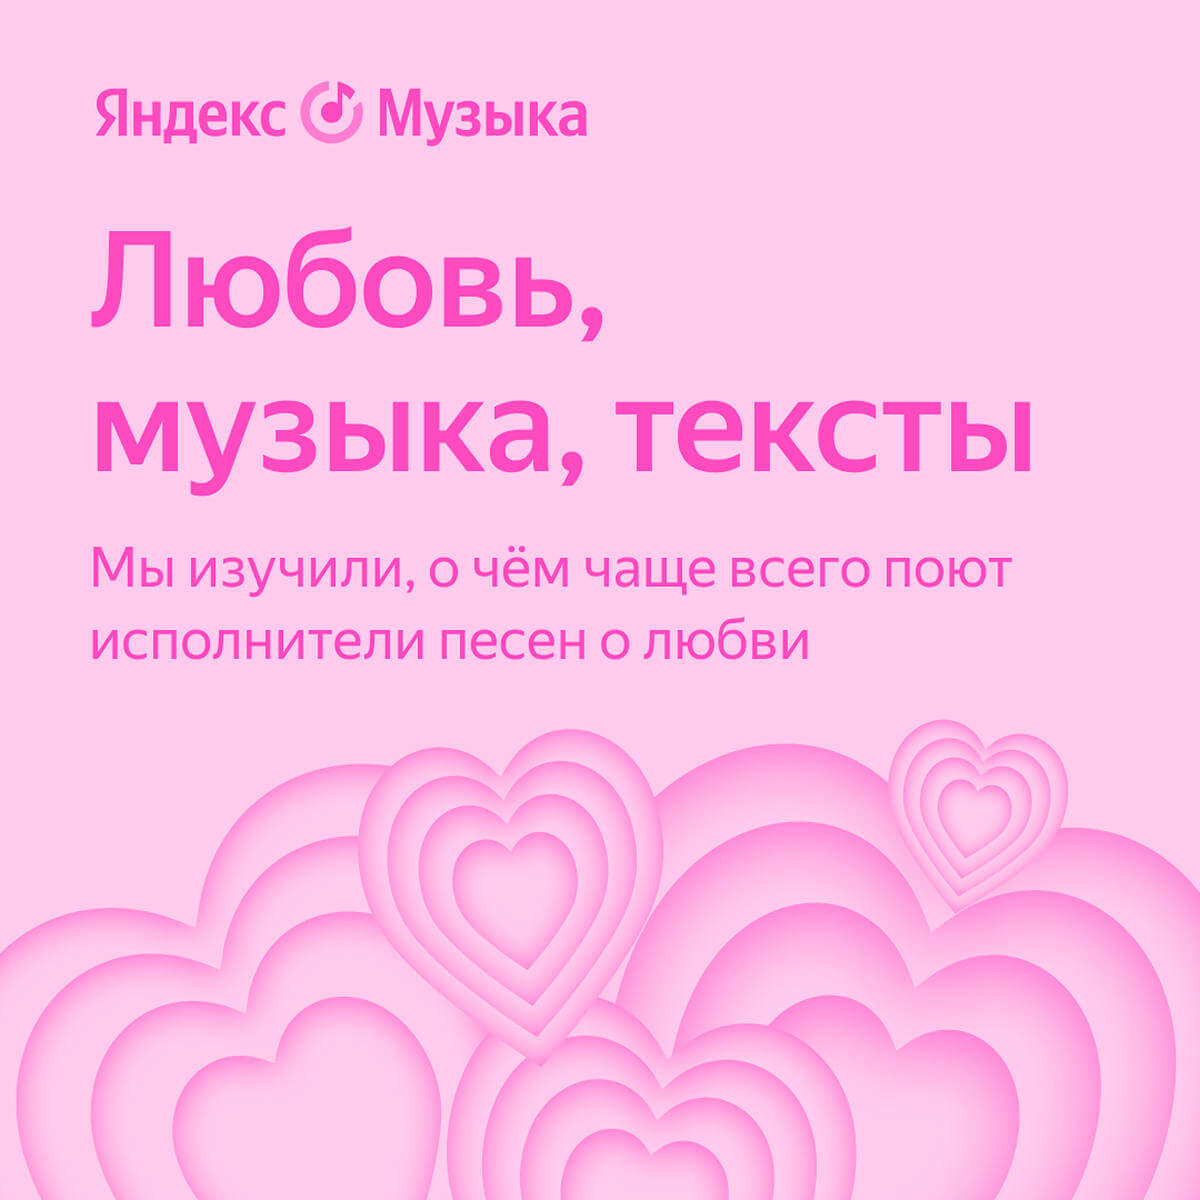 Яндекс Музыка исследовала тексты песен о любви